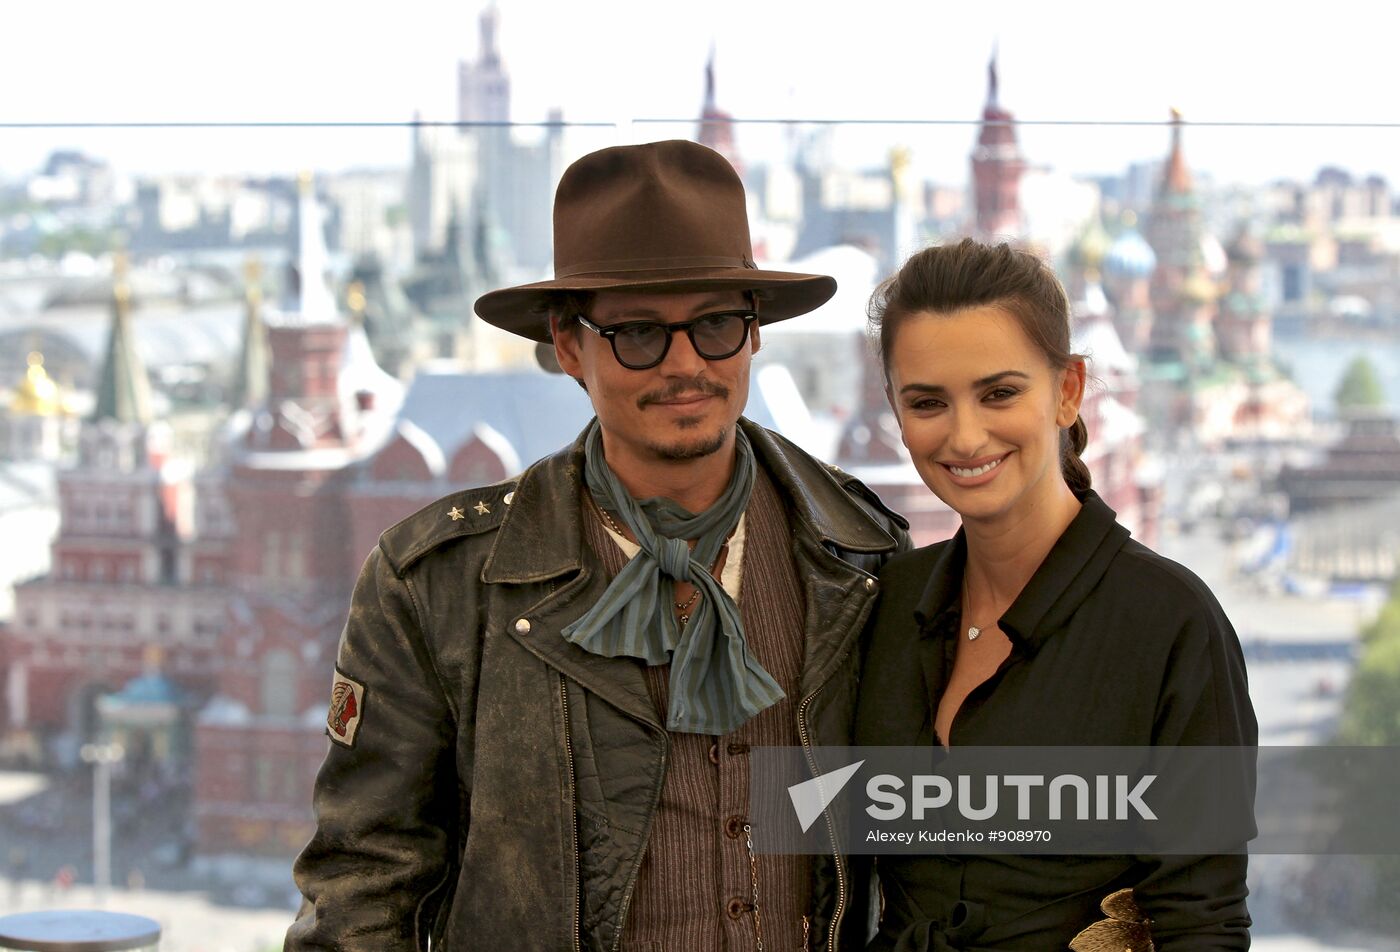 Johnny Depp and Penélope Cruz